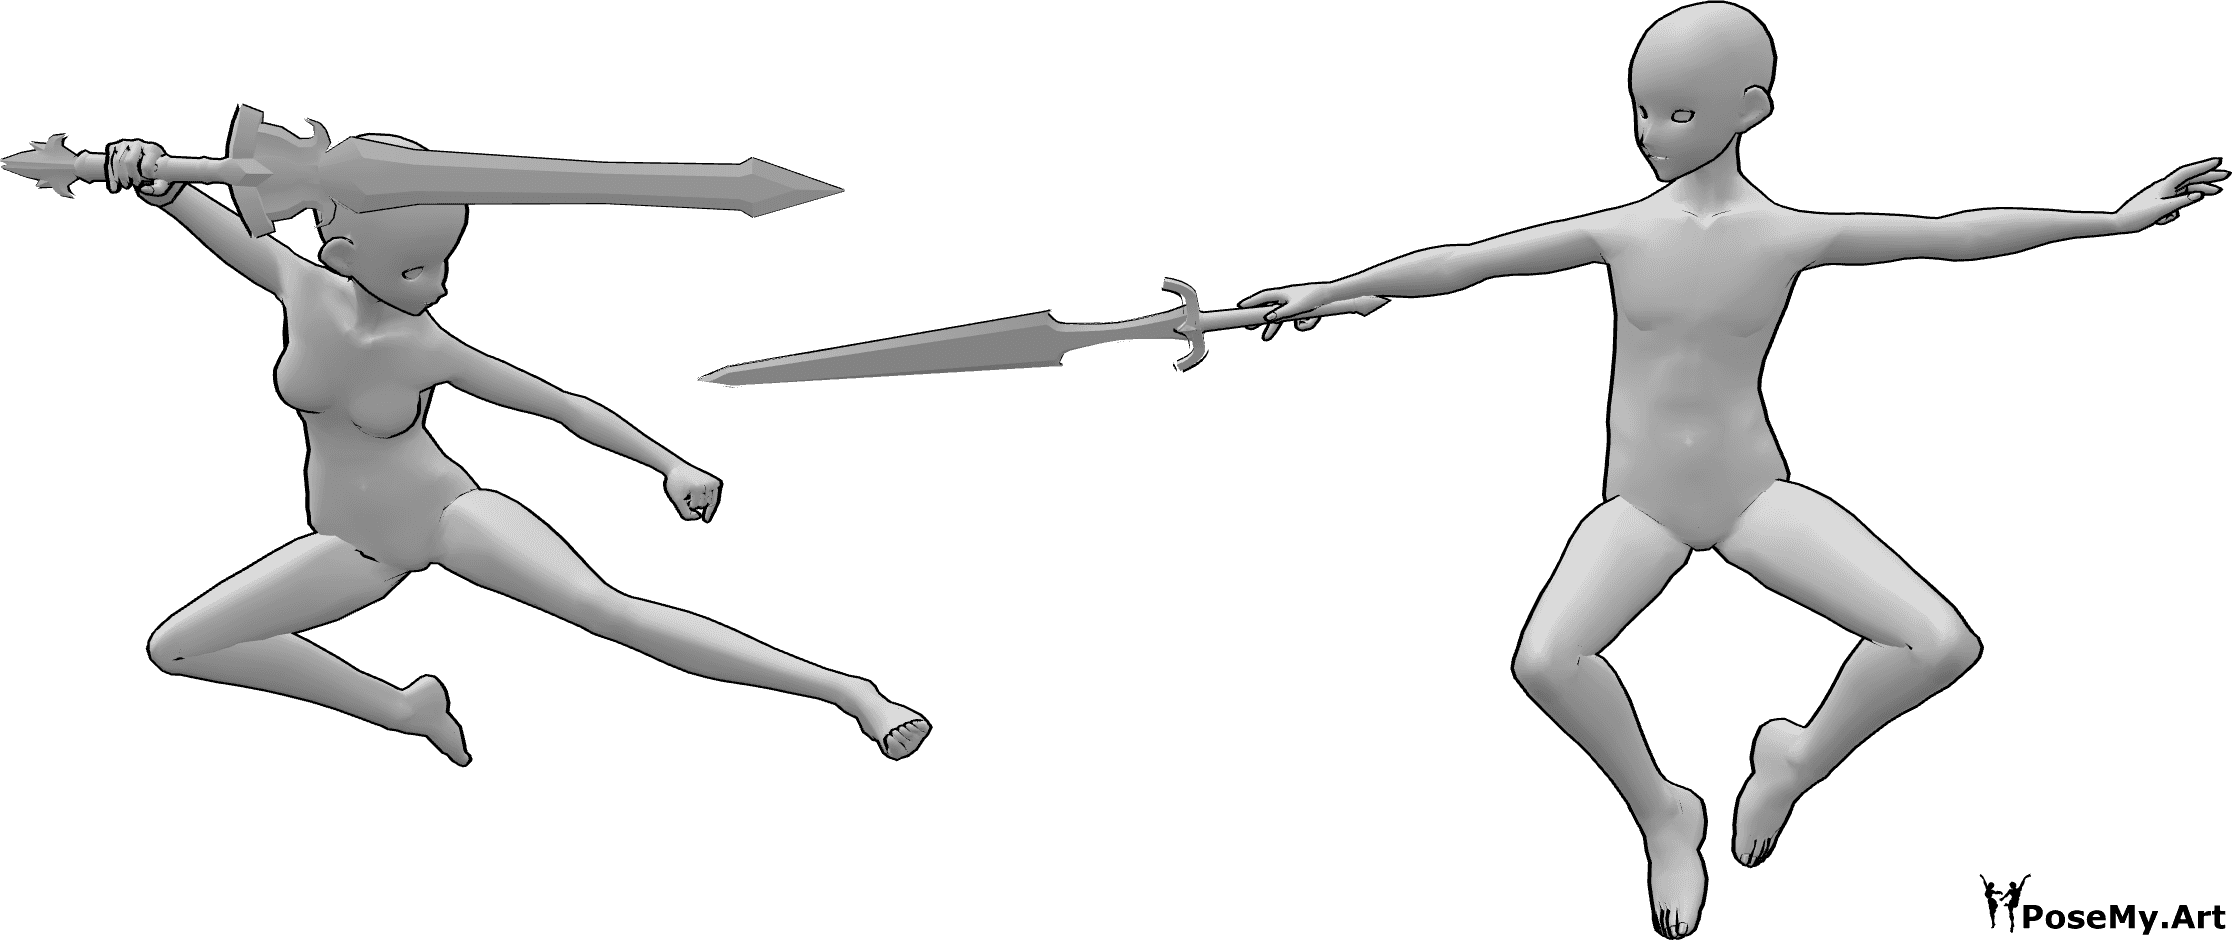 Referencia de poses- Anime air fight pose - Anime femenino y masculino están luchando en el aire con espadas pose